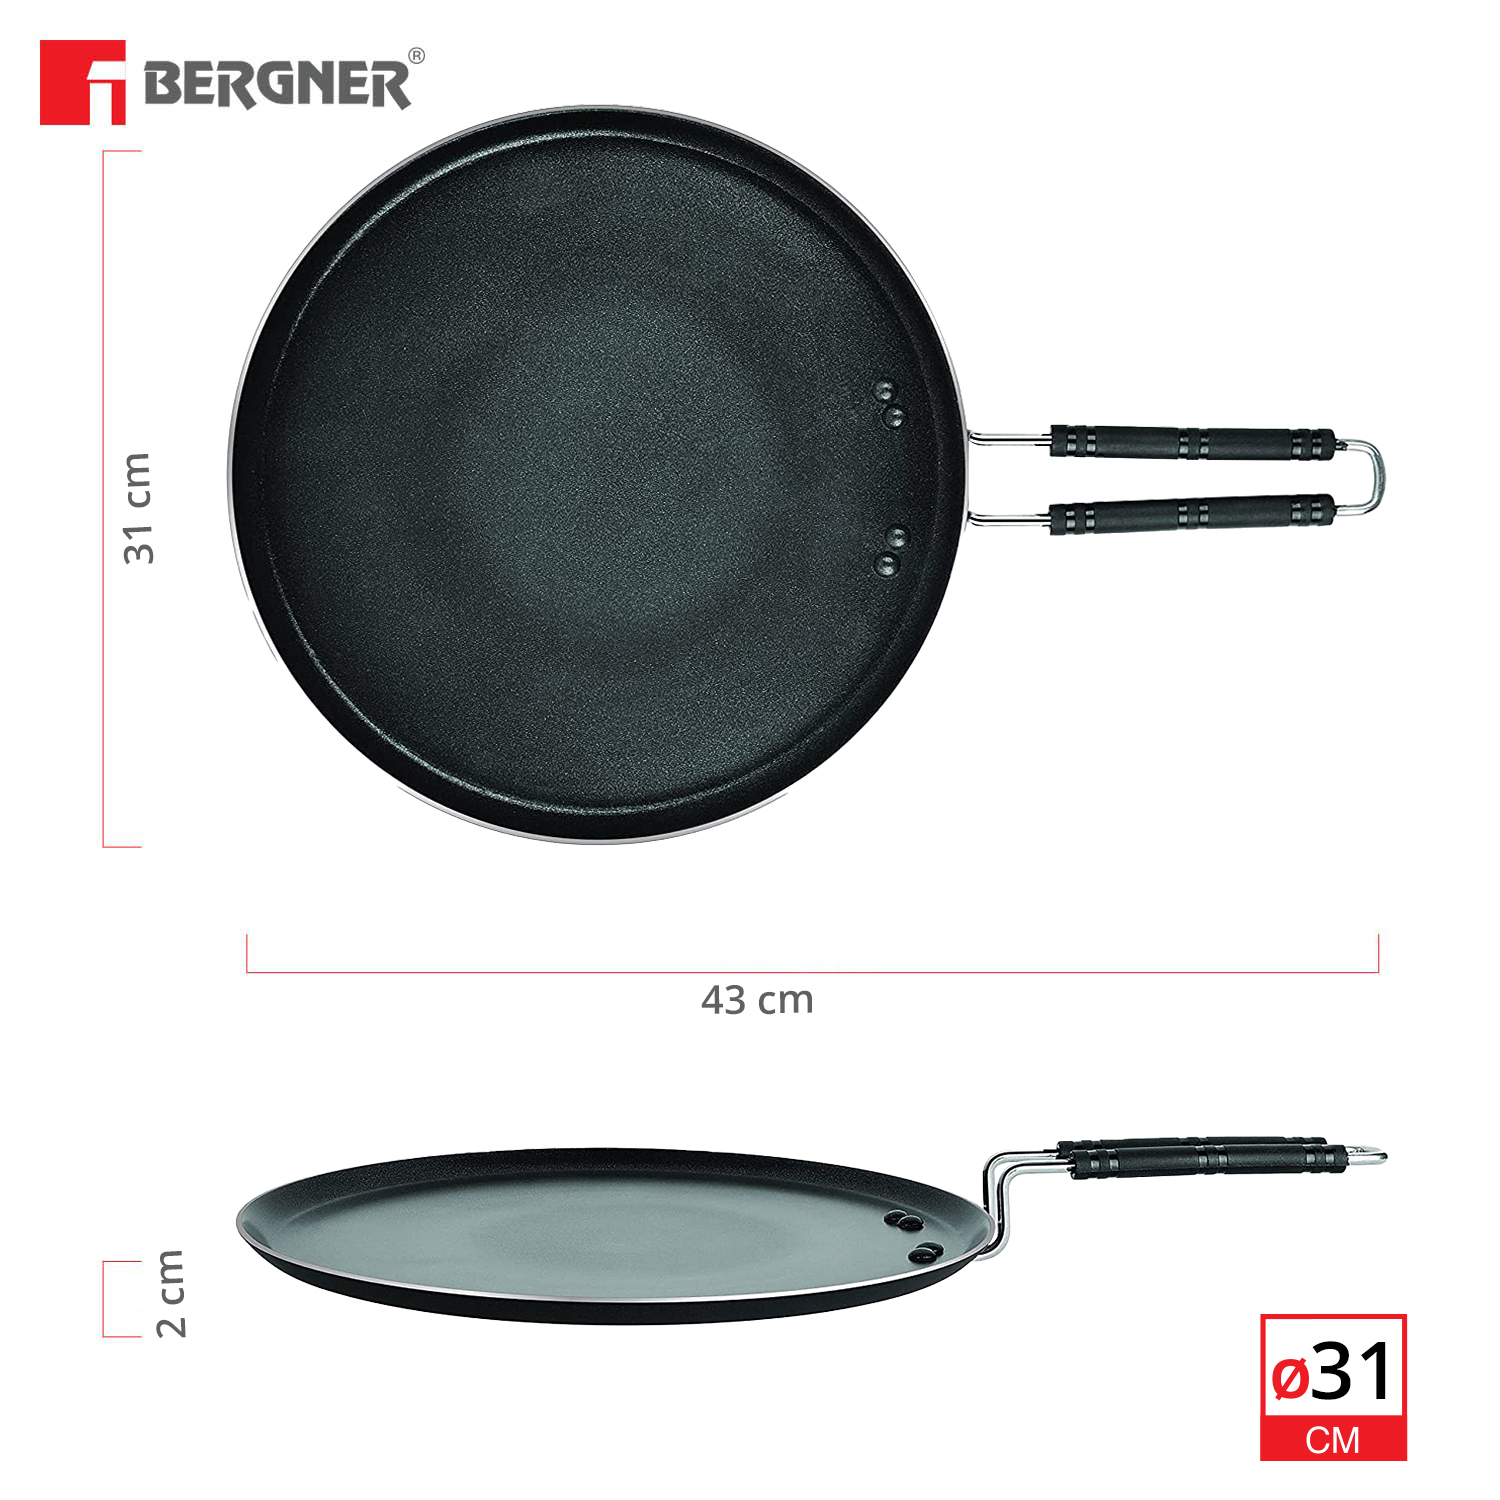 Bergner Essential Plus Non-stick Tawa, Black - 31cm